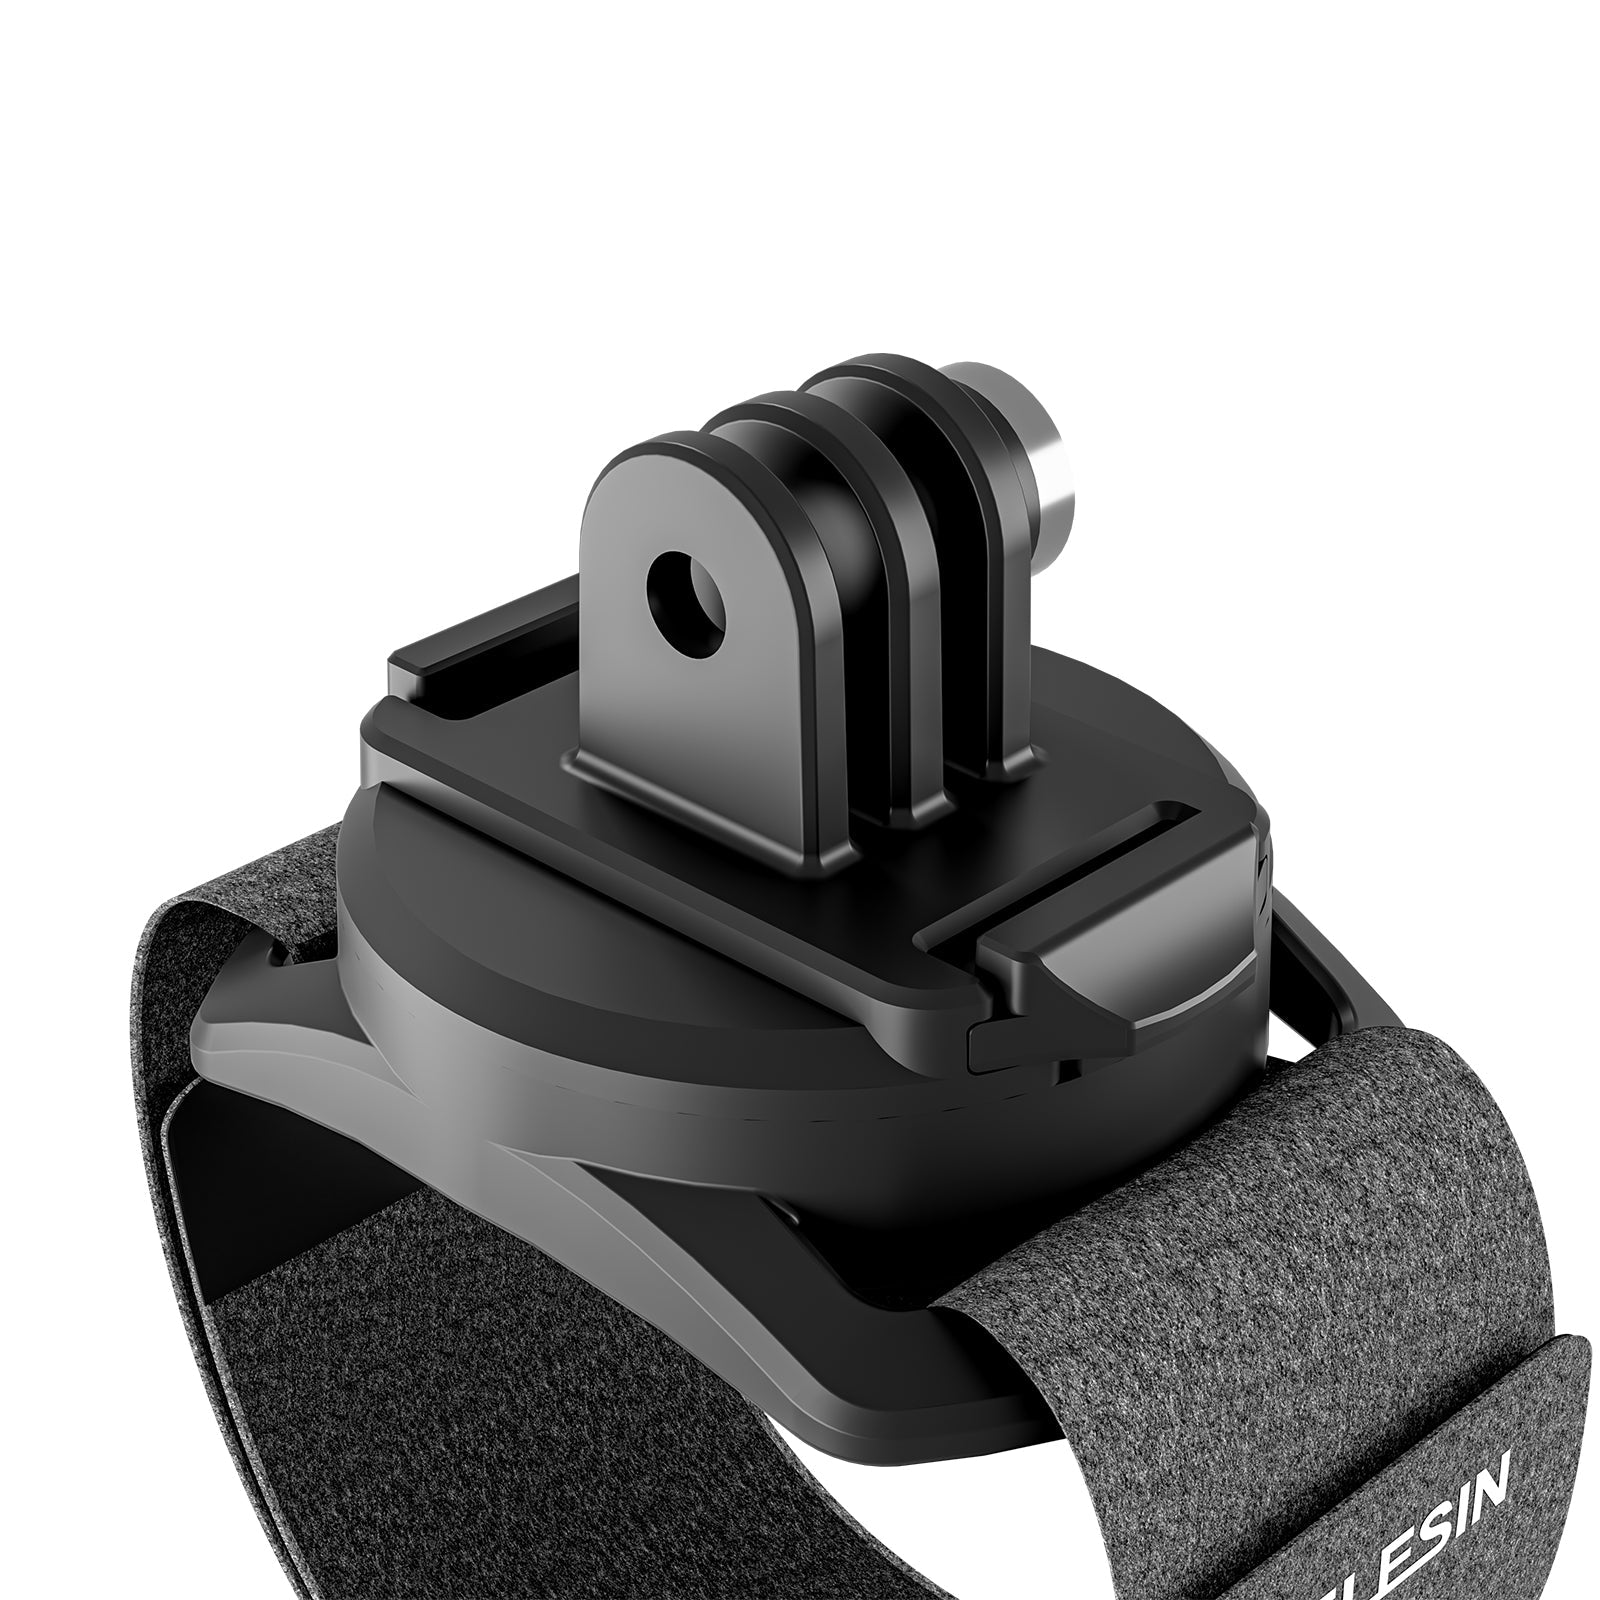 TELESIN 360 Degree Steerable Wrist Strap for Action Camera - telesinstore